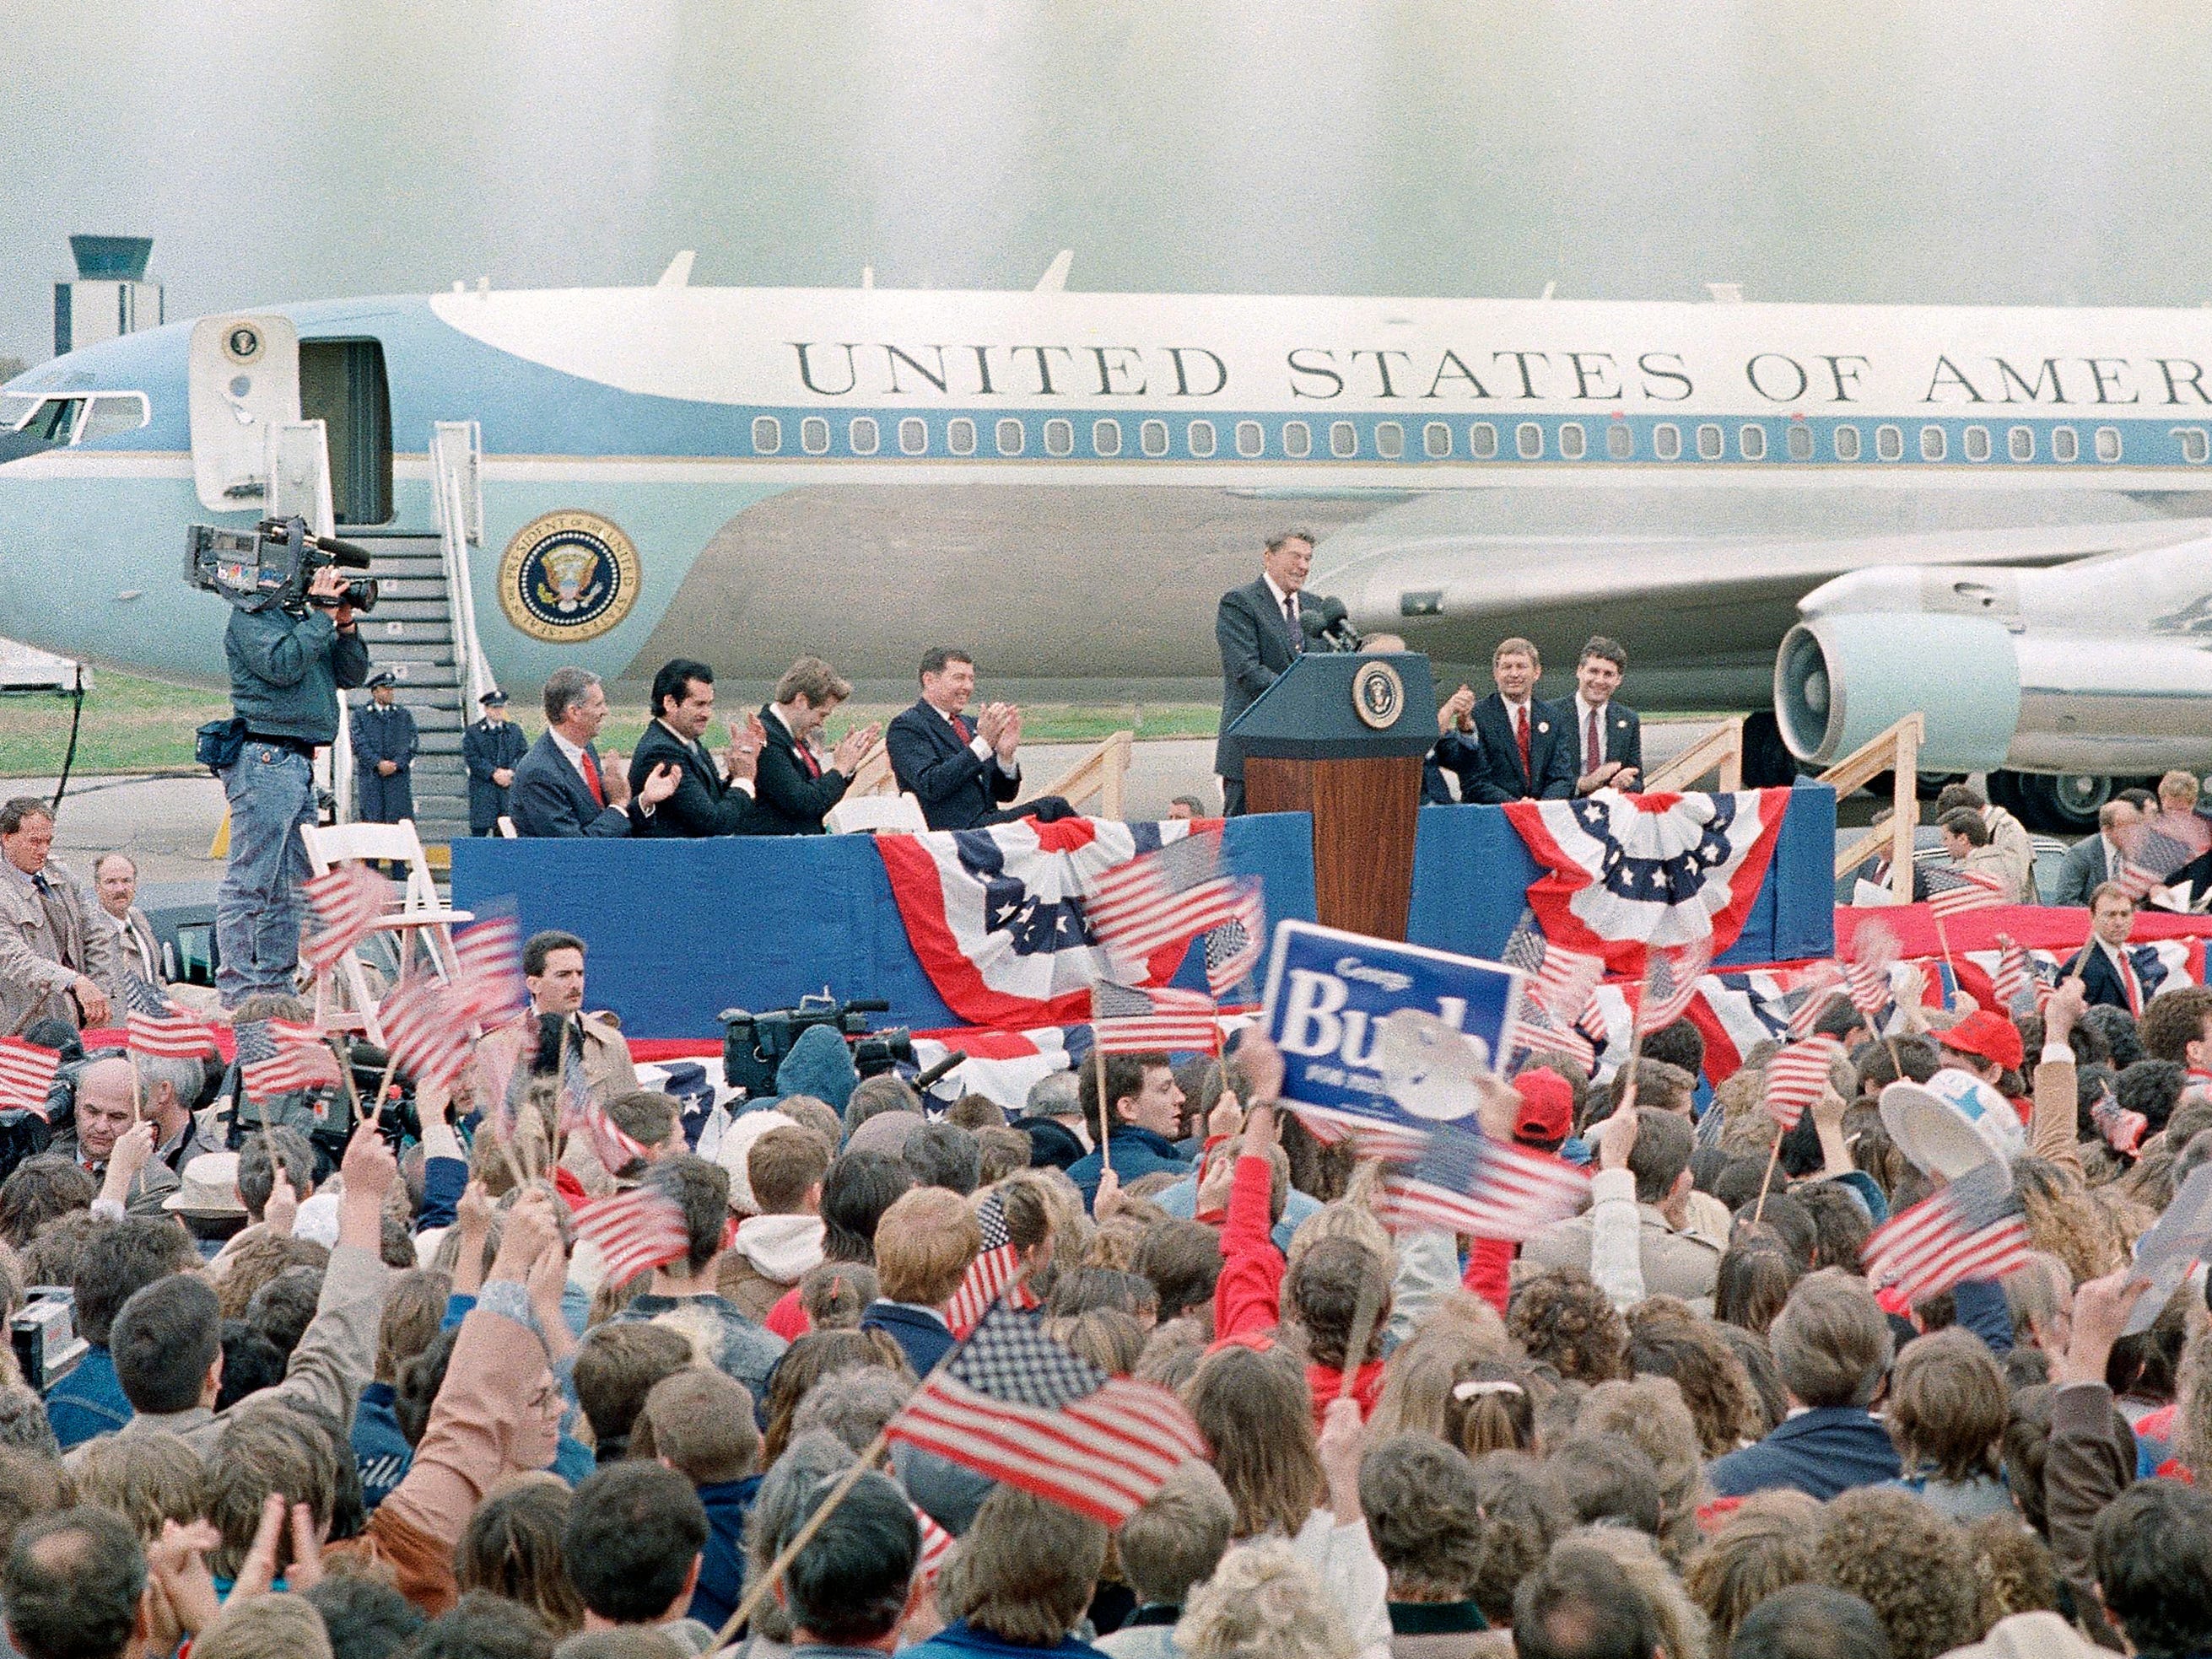 Eine Menschenmenge steht mit amerikanischen Flaggen und Gesichtern, dann Präsident Ronald Reagan, der hinter einem Podium vor einem blau-weißen Jet steht